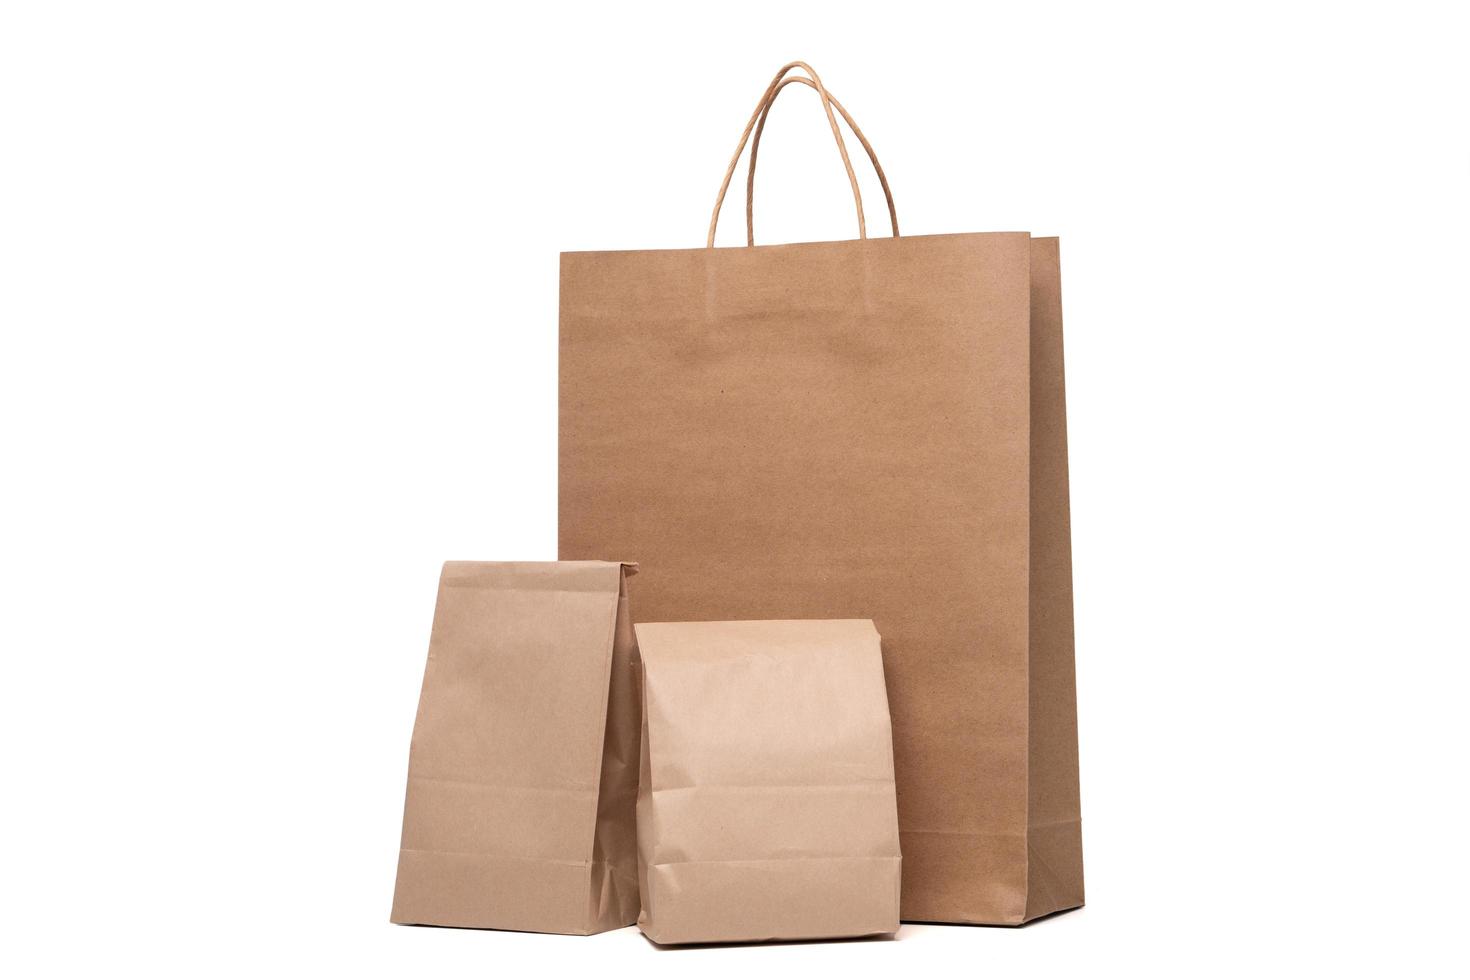 grupo do almoço papel saco e compras papel bolsas isolado em uma branco fundo foto